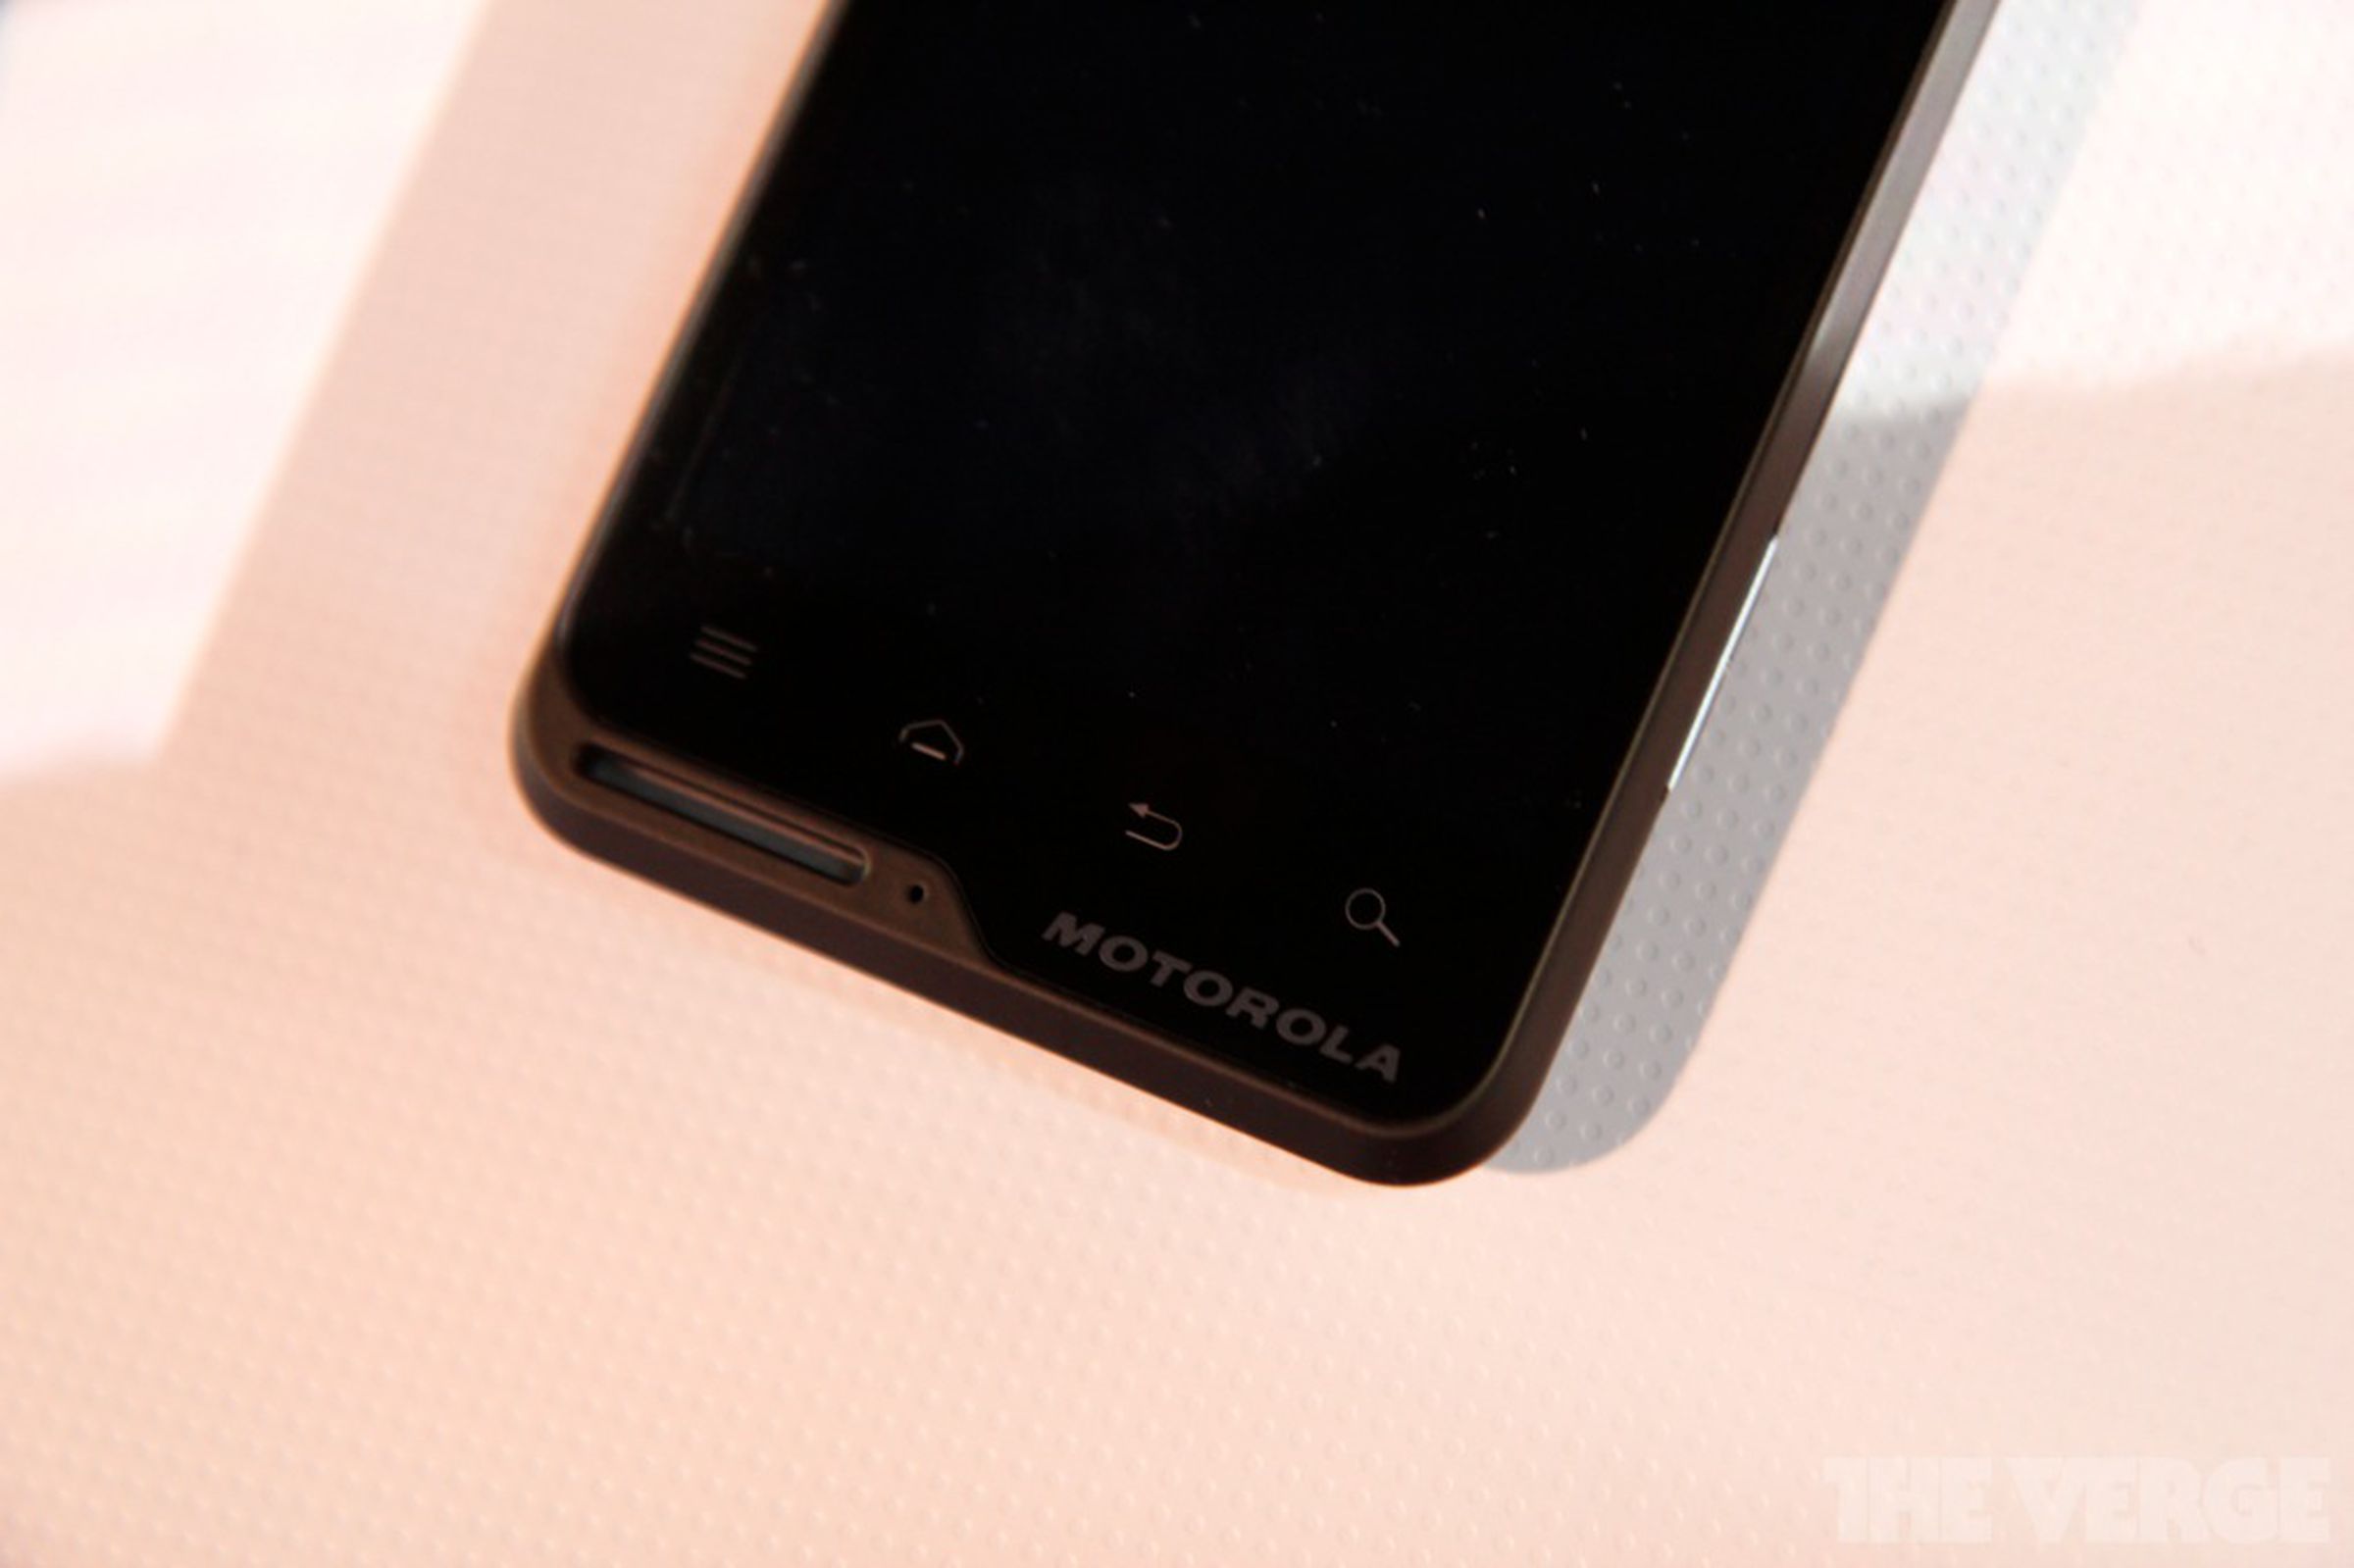 Motorola Motoluxe and Defy Mini pictures